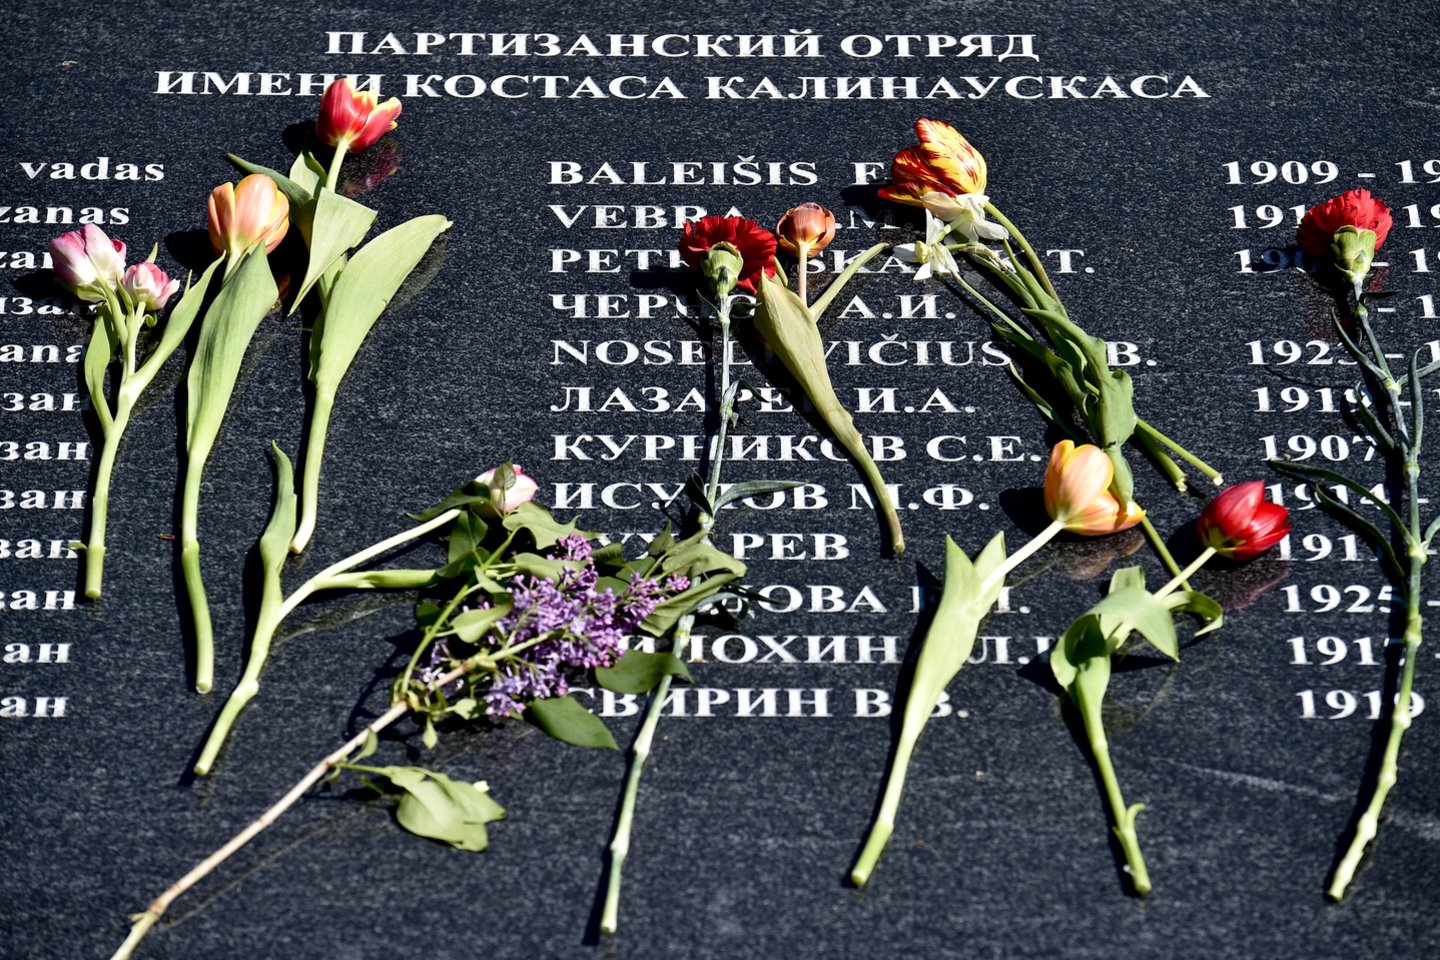 Vilniaus miesto savivaldybė Antakalnio kapinių prieigose pastatė šešis stendus su nuotraukomis iš Ukrainos, taip siekdama priminti apie naują Rusijos pradėtą karą.<br>V.Ščiavinsko nuotr.